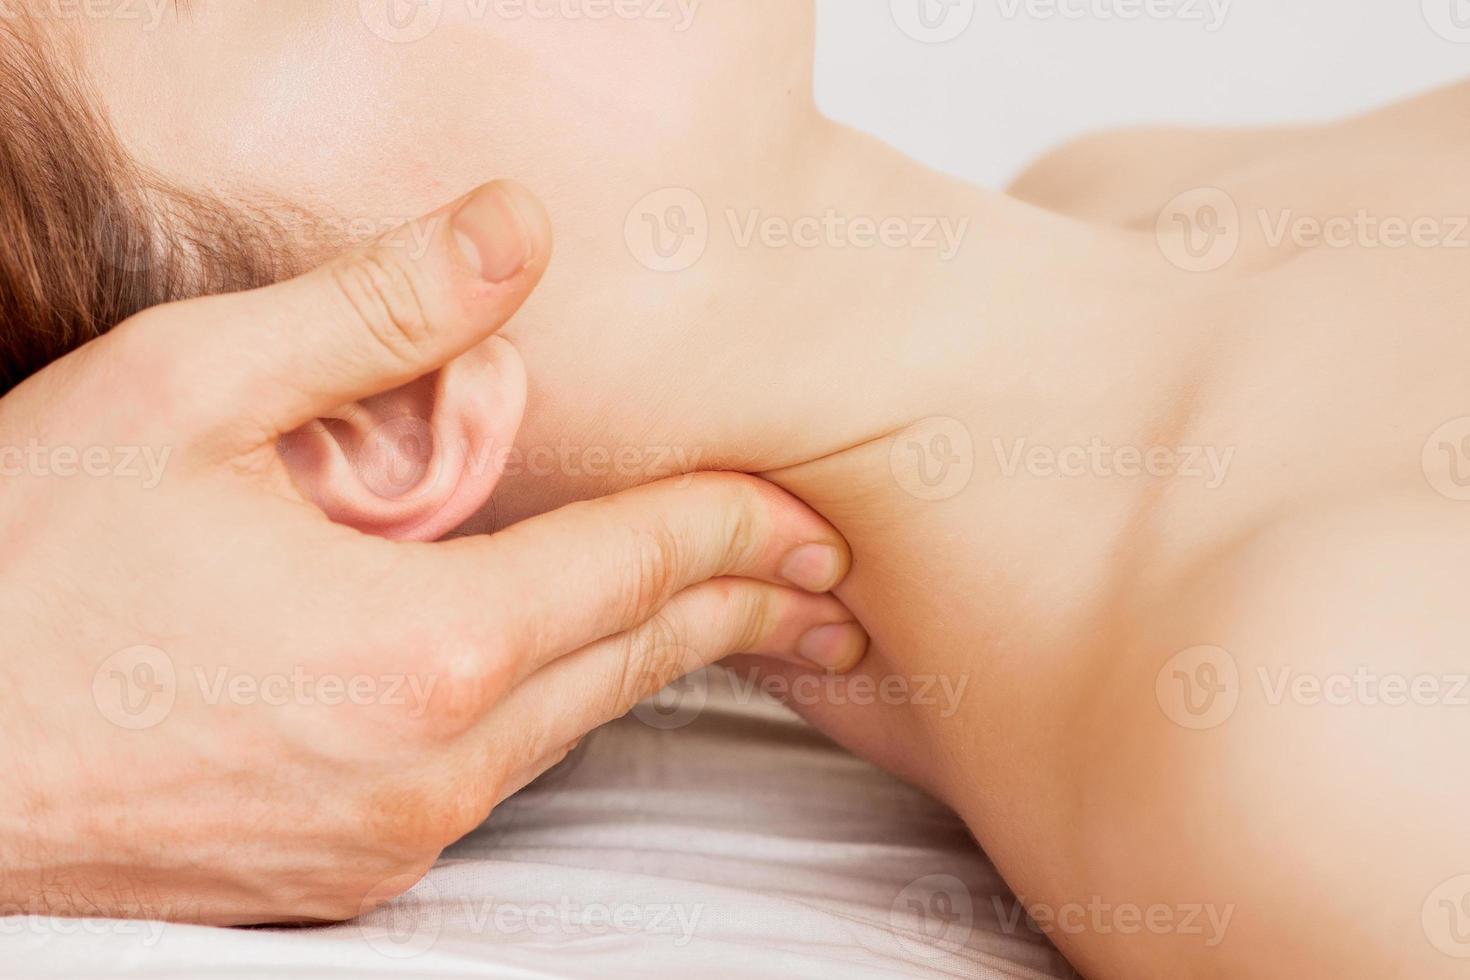 masaje de cabeza de mujer. foto